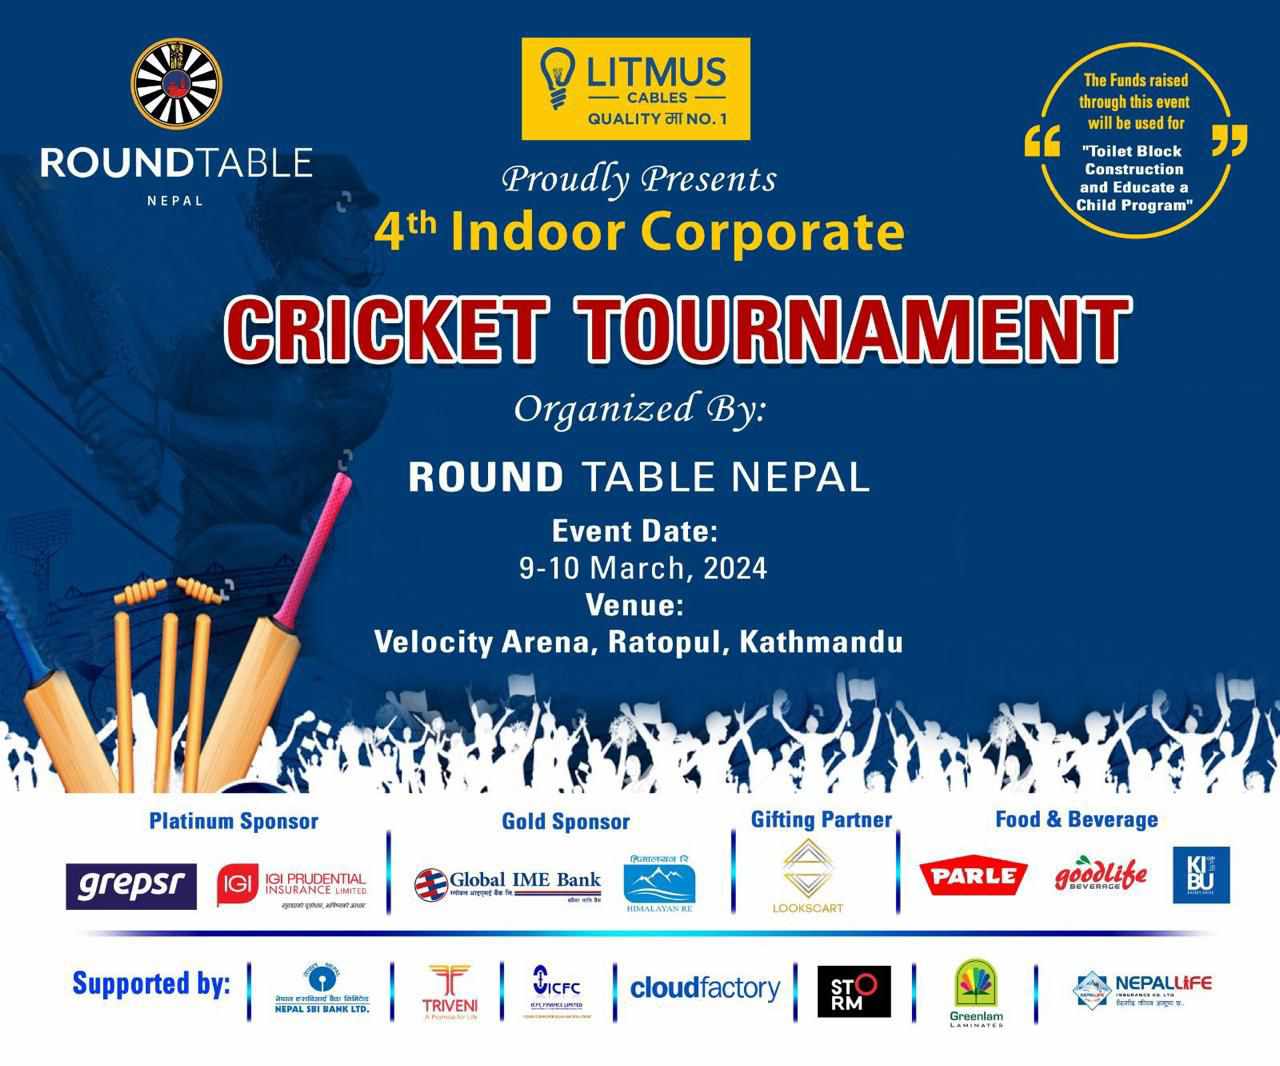 लिटमस इन्डोर कर्पोरेट क्रिकेट प्रतियोगिता सुरु, आठ टीम सहभागी